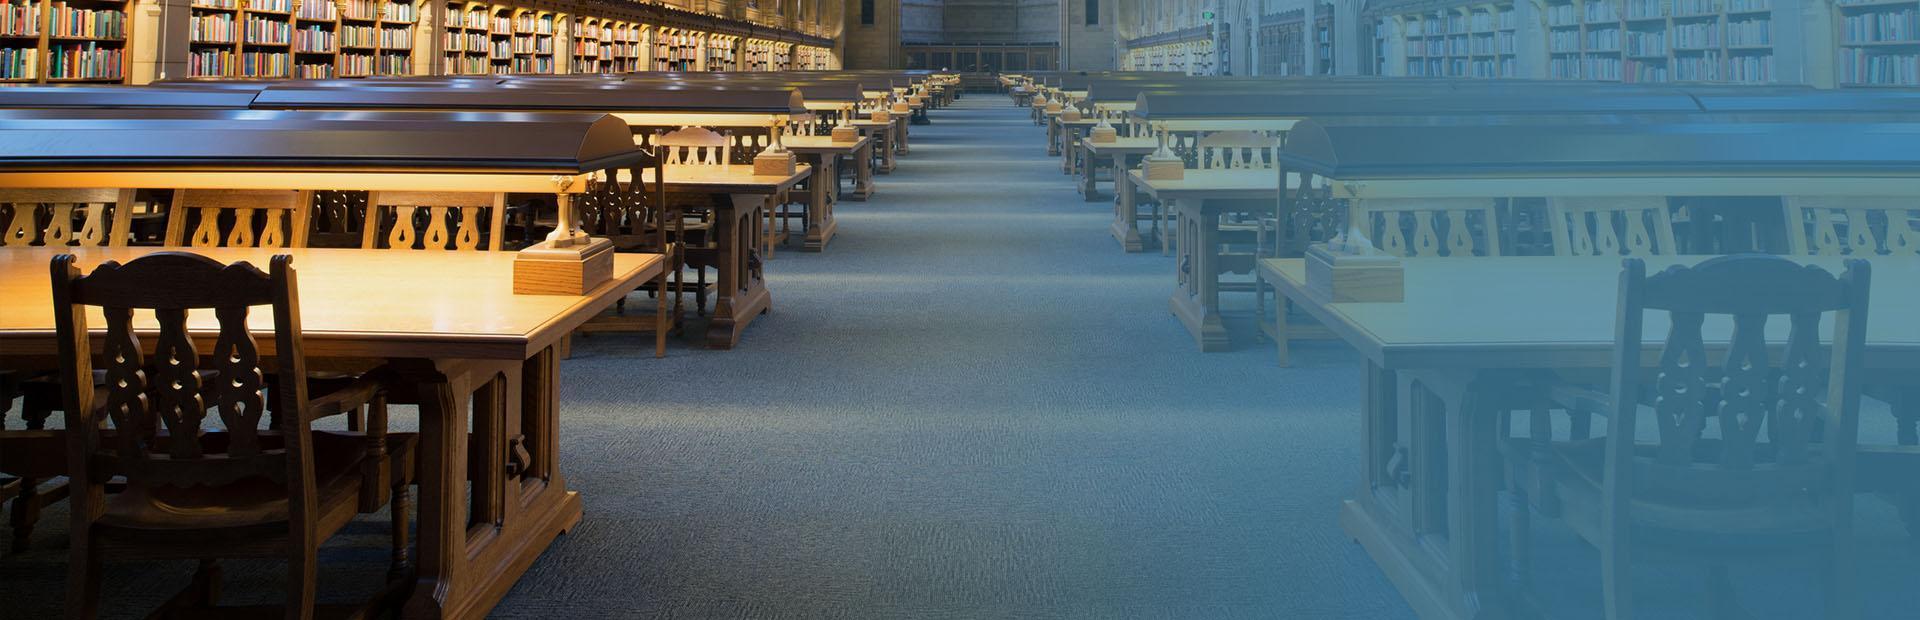 wnętrze biblioteki z niebieską wykładziną